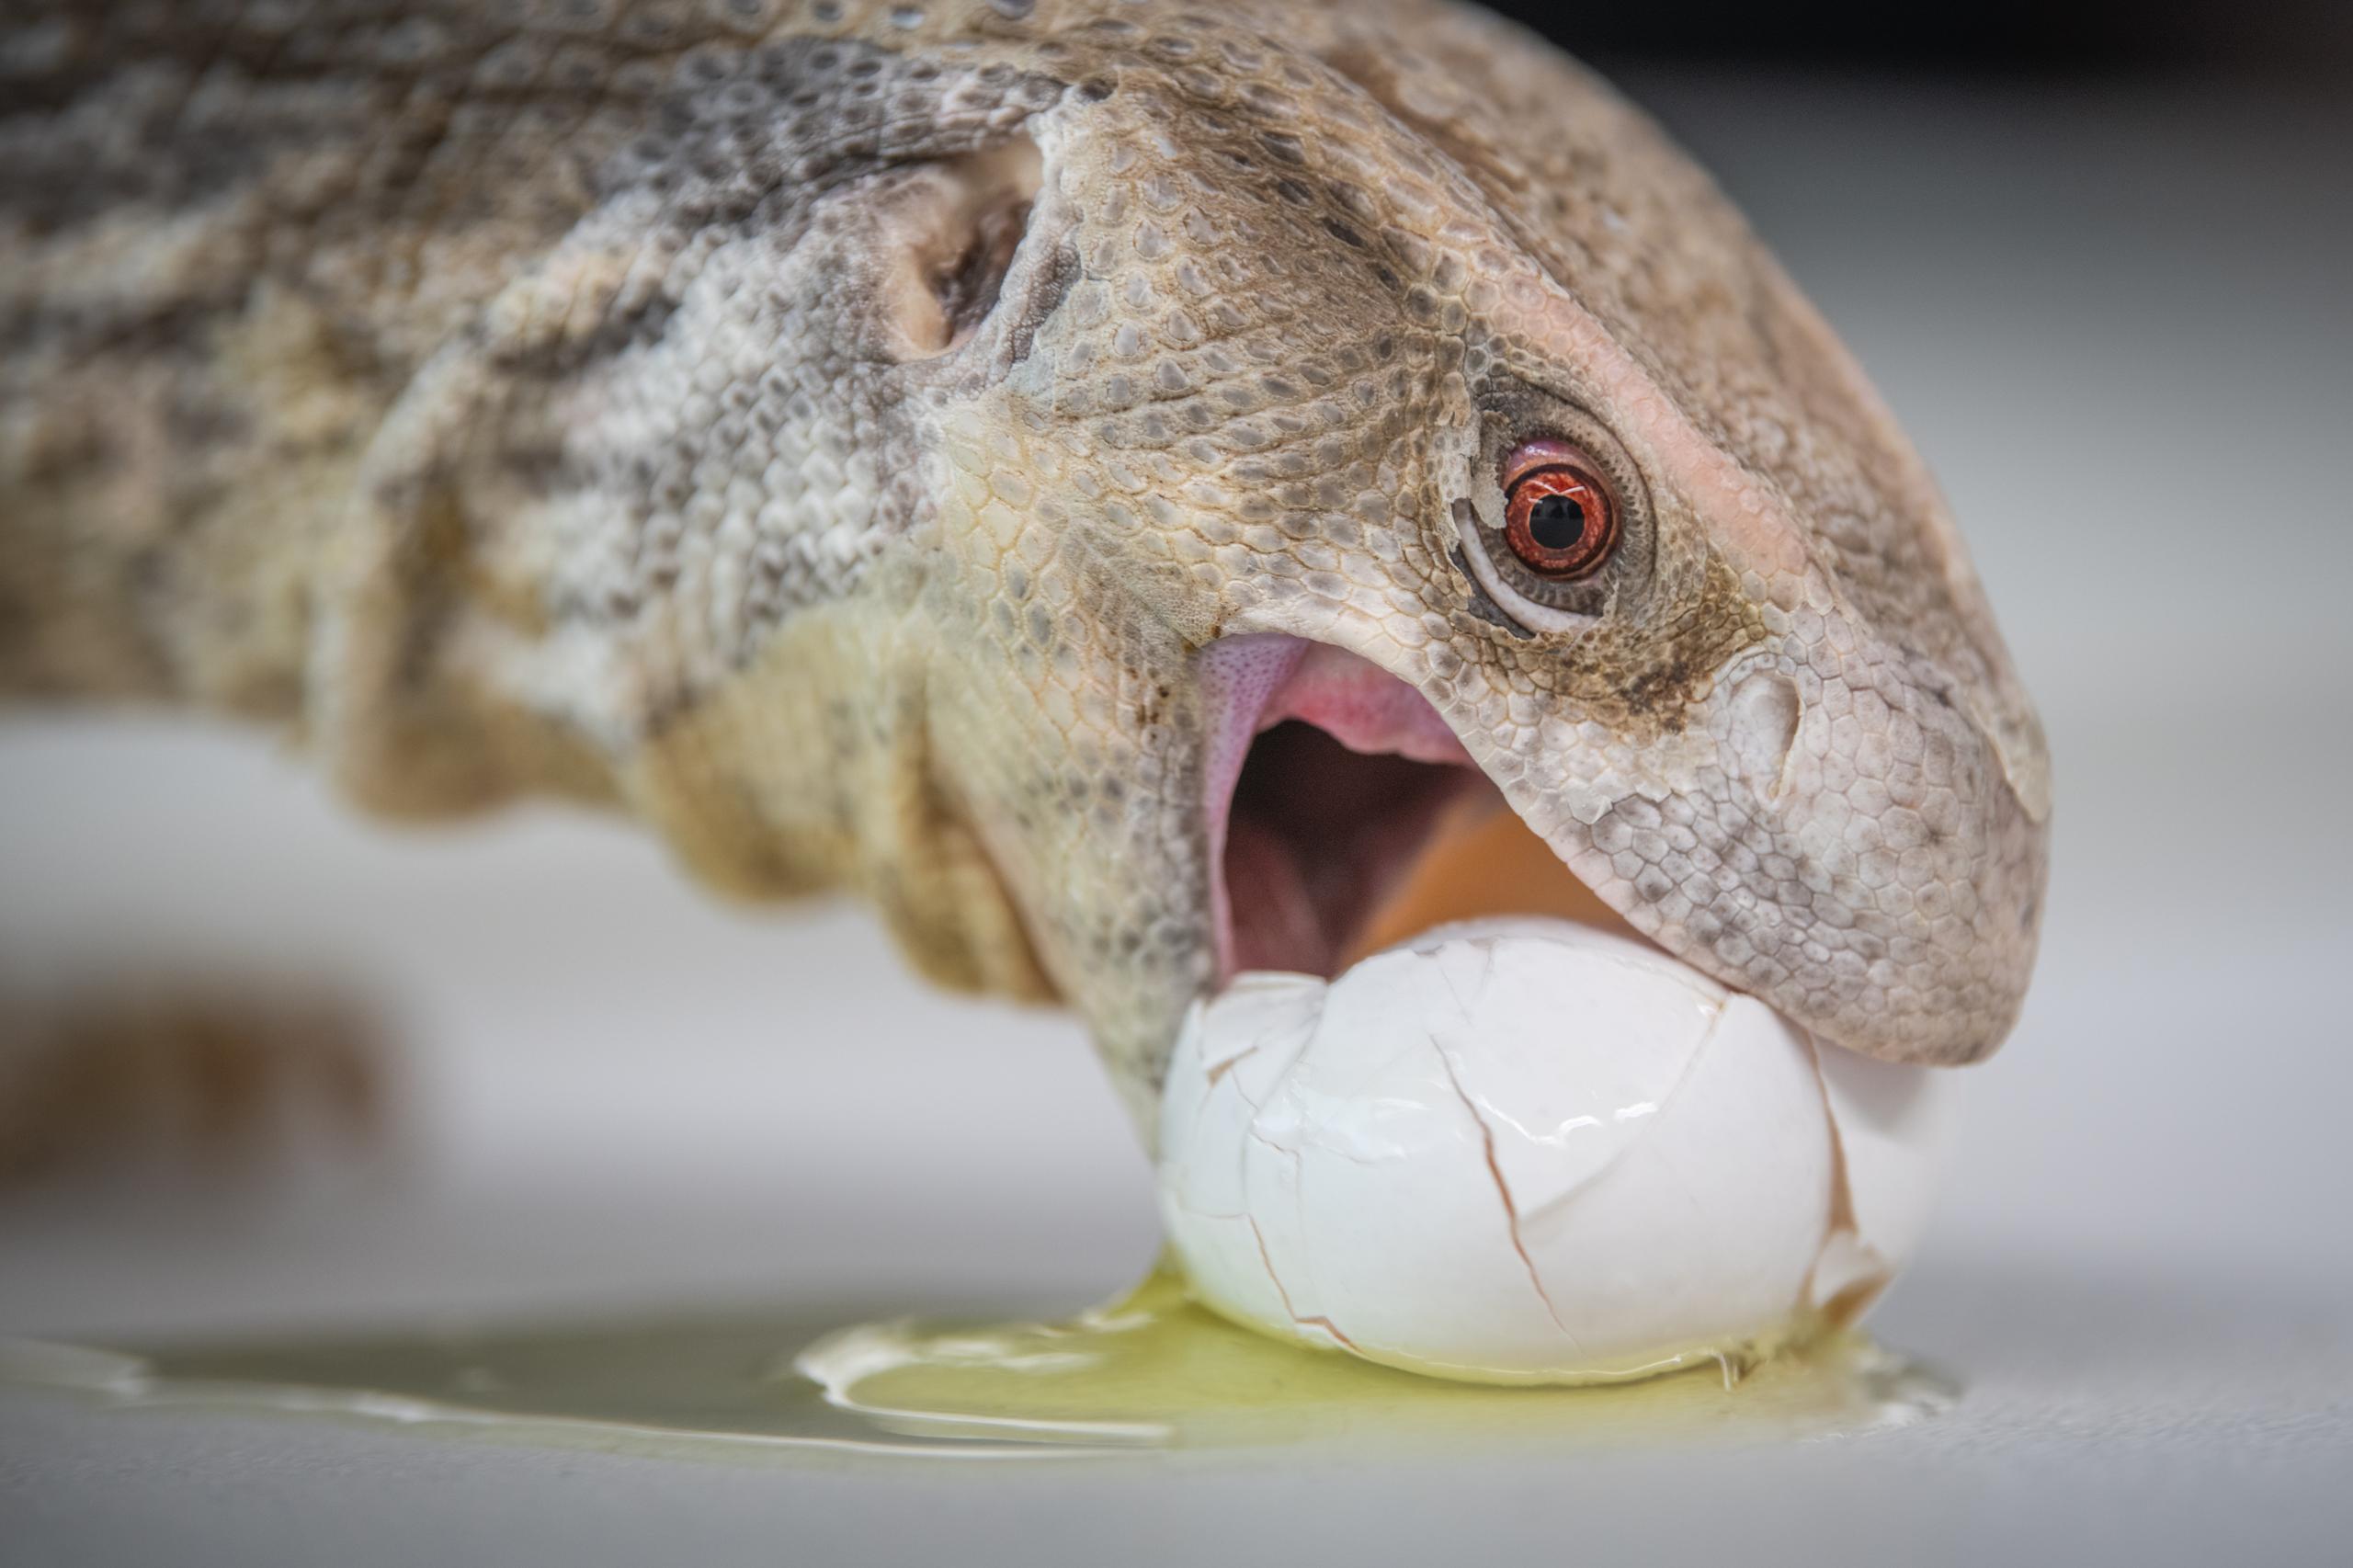 reptile eats egg